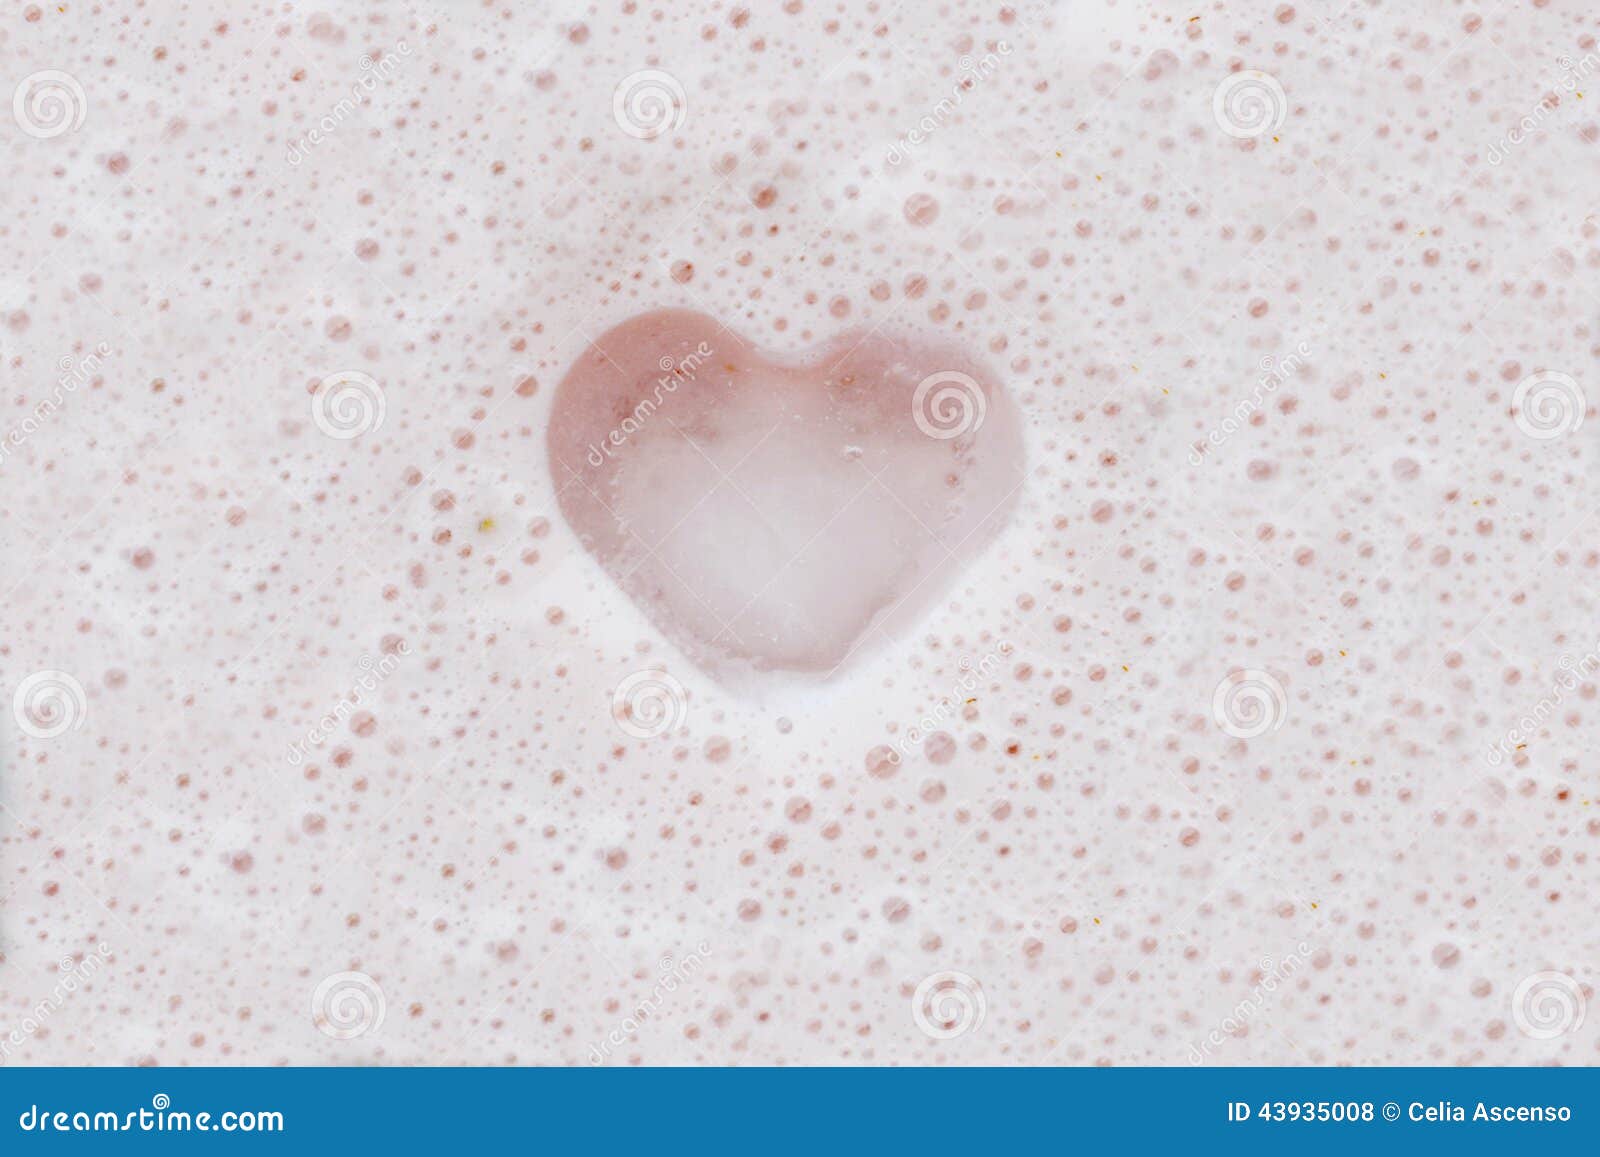 Foam Heart - Floating Heart Shape